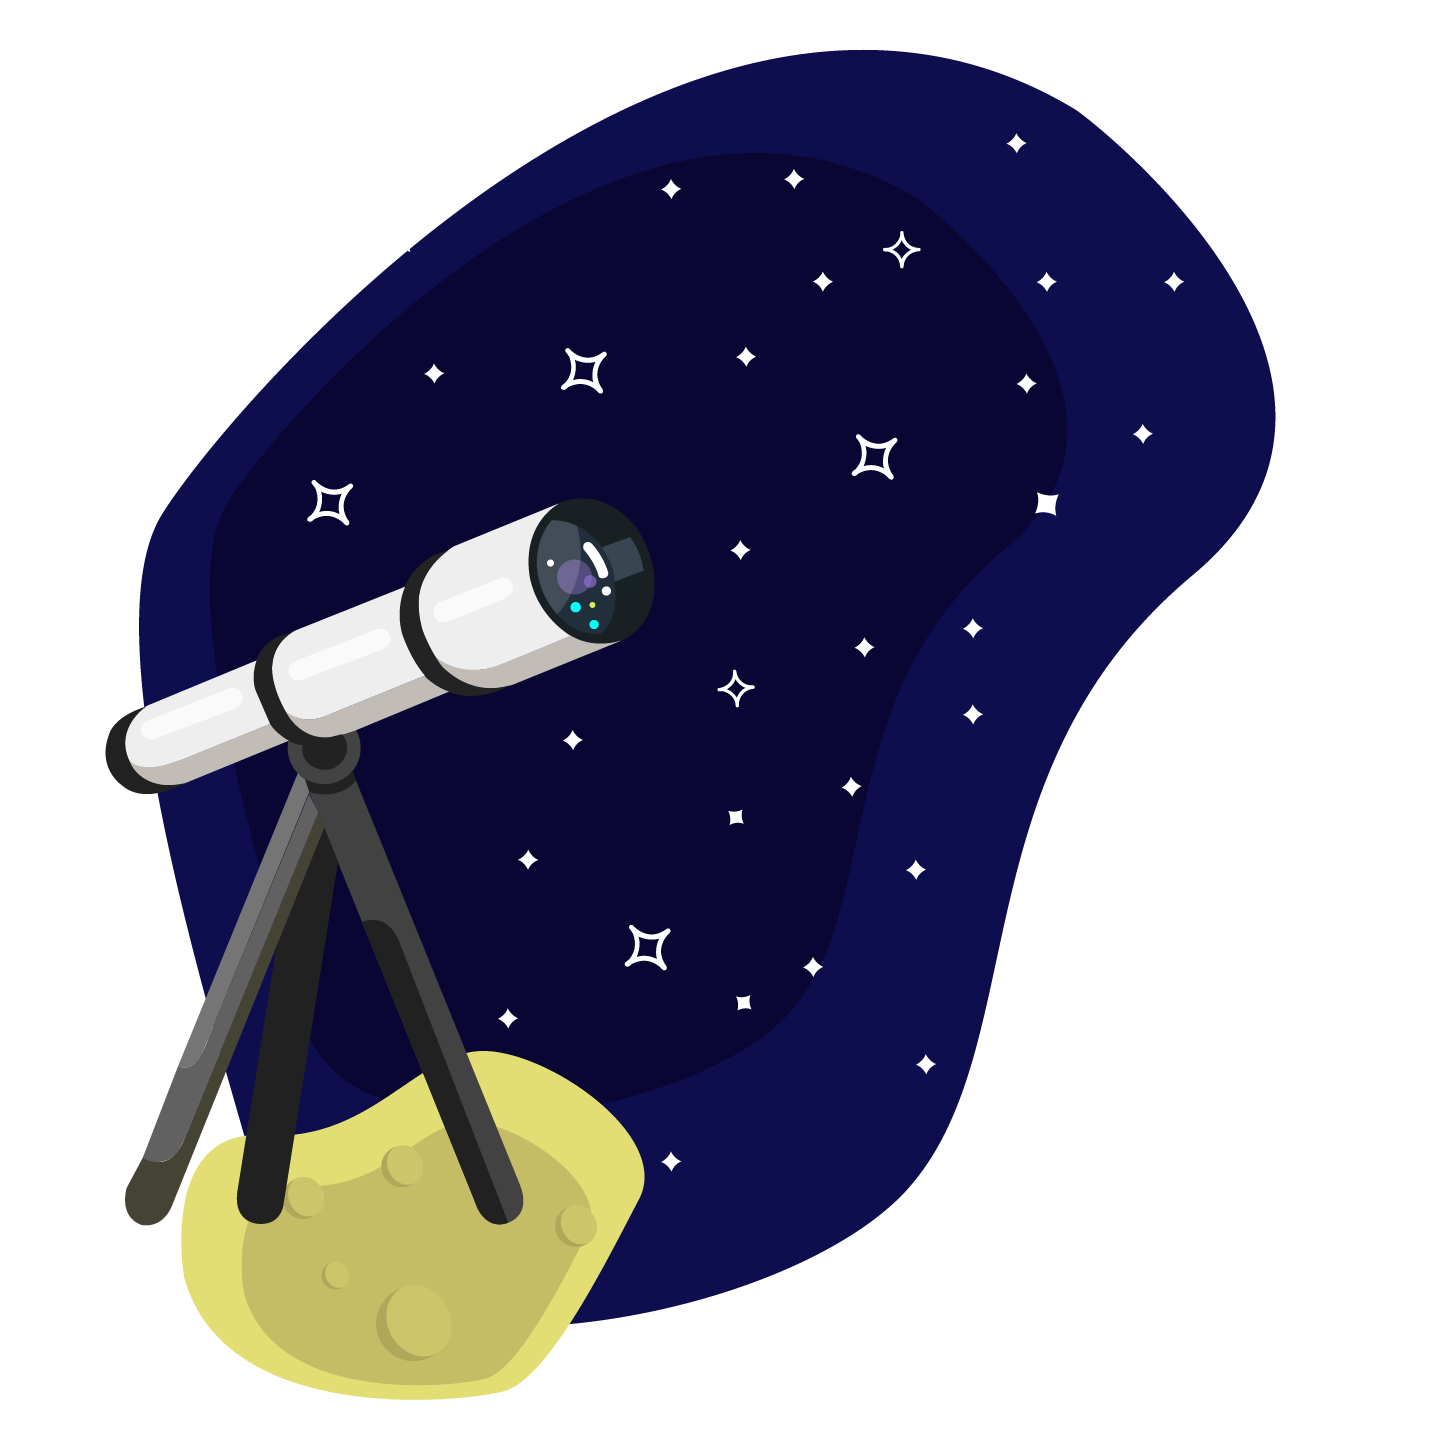 Telescope on the moon illustration